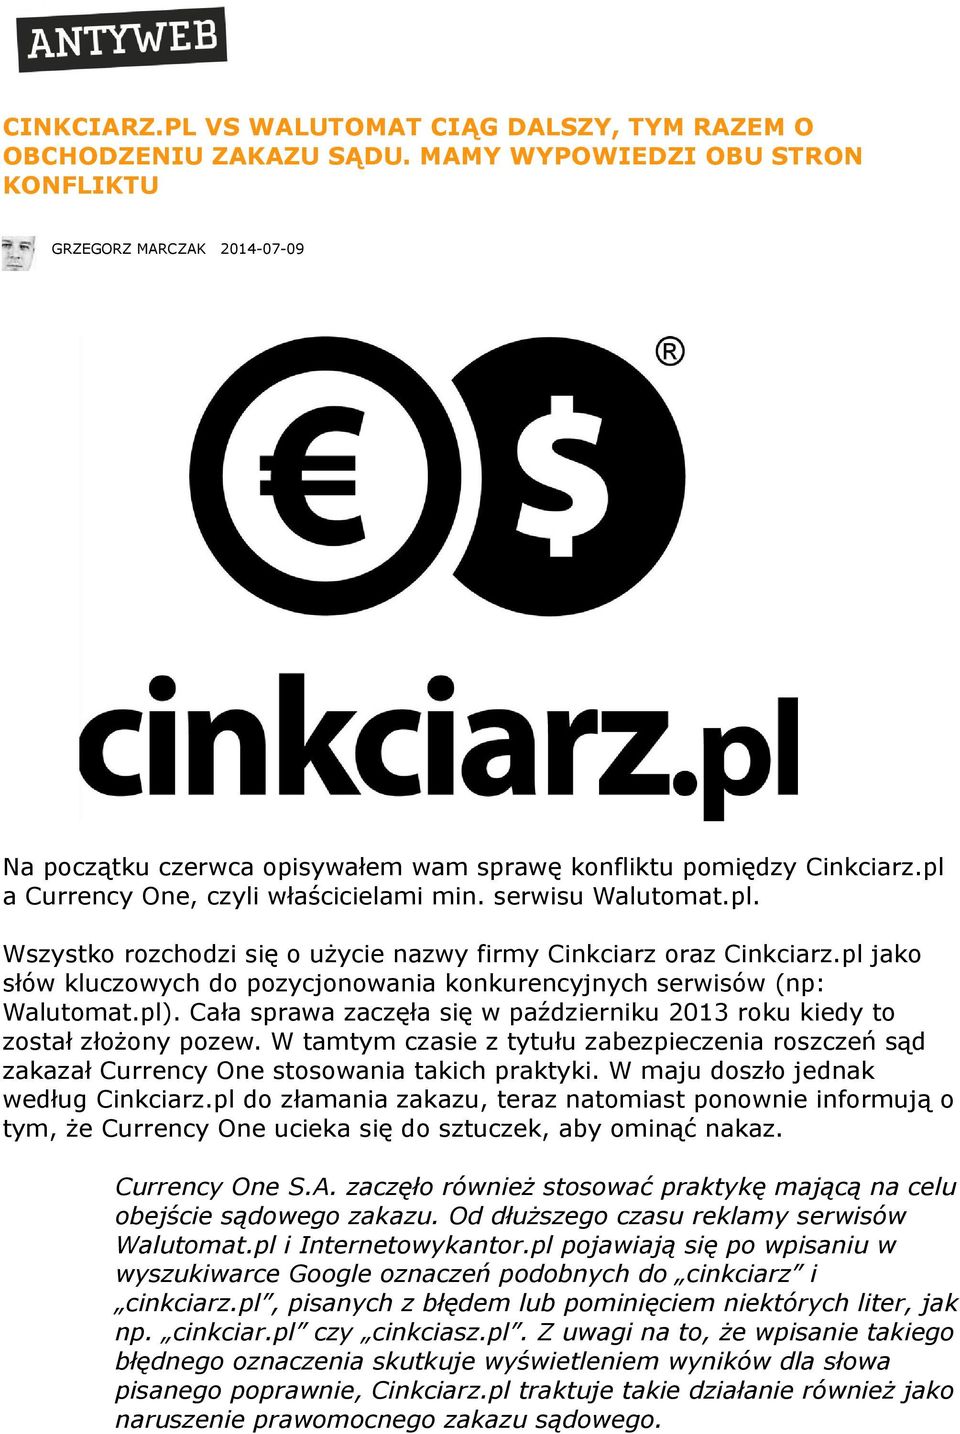 serwisu Walutomat.pl. Wszystko rozchodzi się o użycie nazwy firmy Cinkciarz oraz Cinkciarz.pl jako słów kluczowych do pozycjonowania konkurencyjnych serwisów (np: Walutomat.pl).